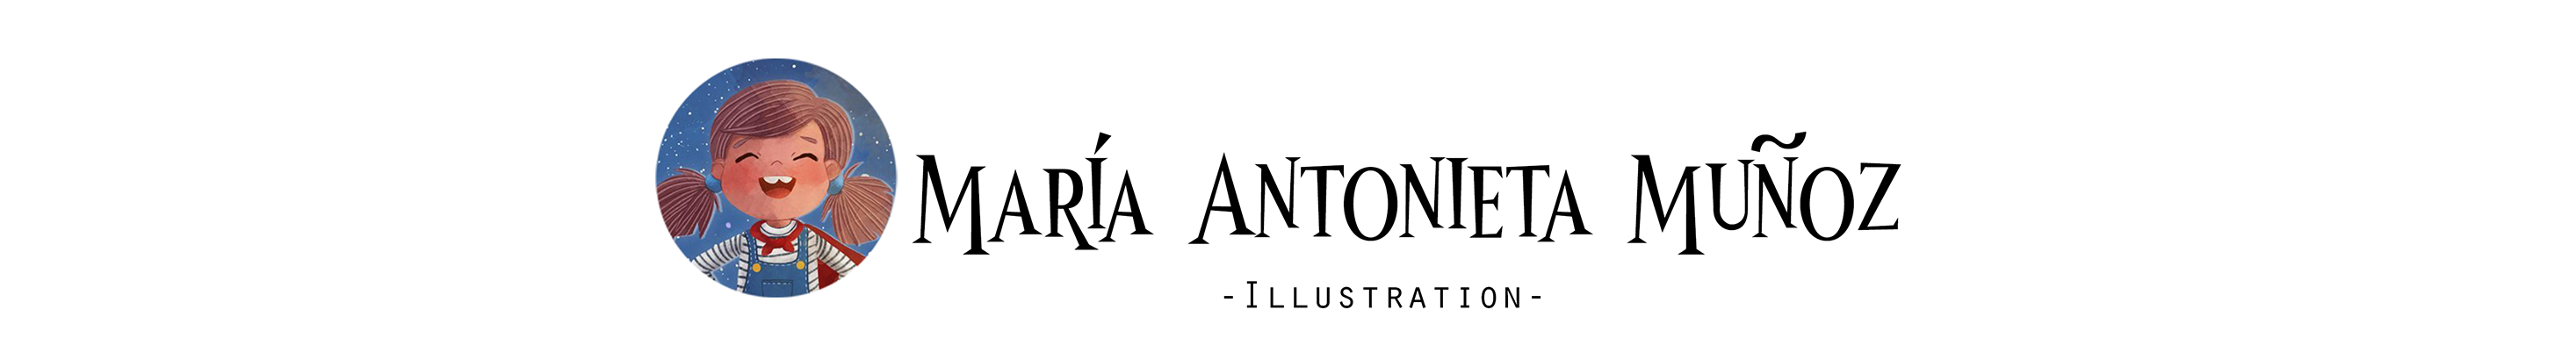 María Antonieta Muñoz's profile banner